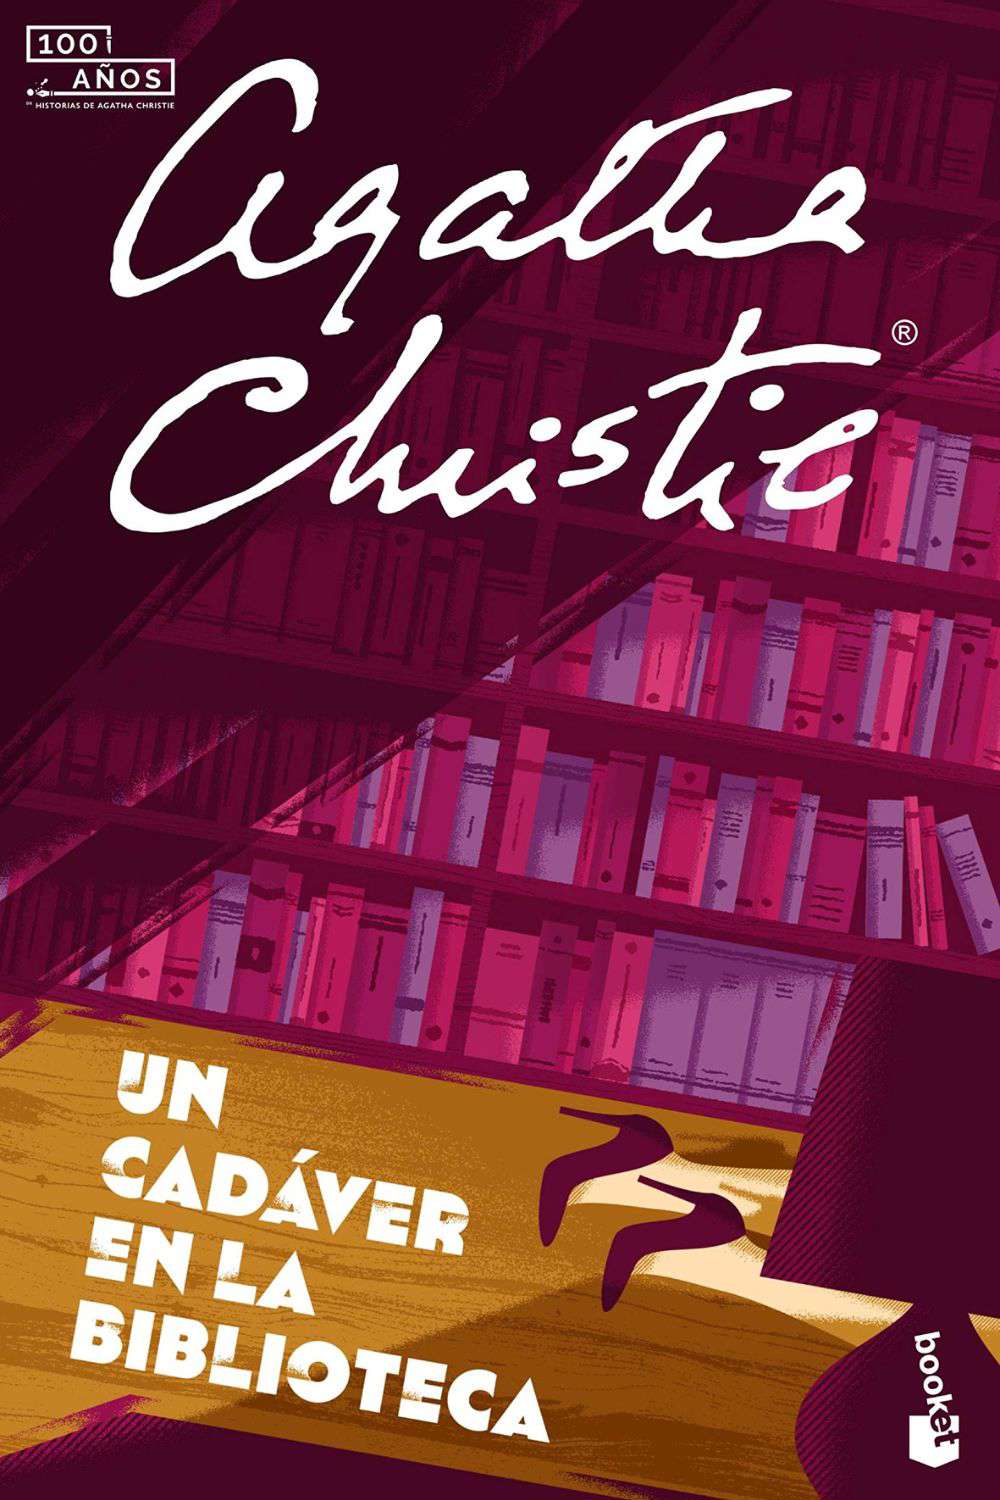 'Un cadáver en la biblioteca' de Agatha Christie